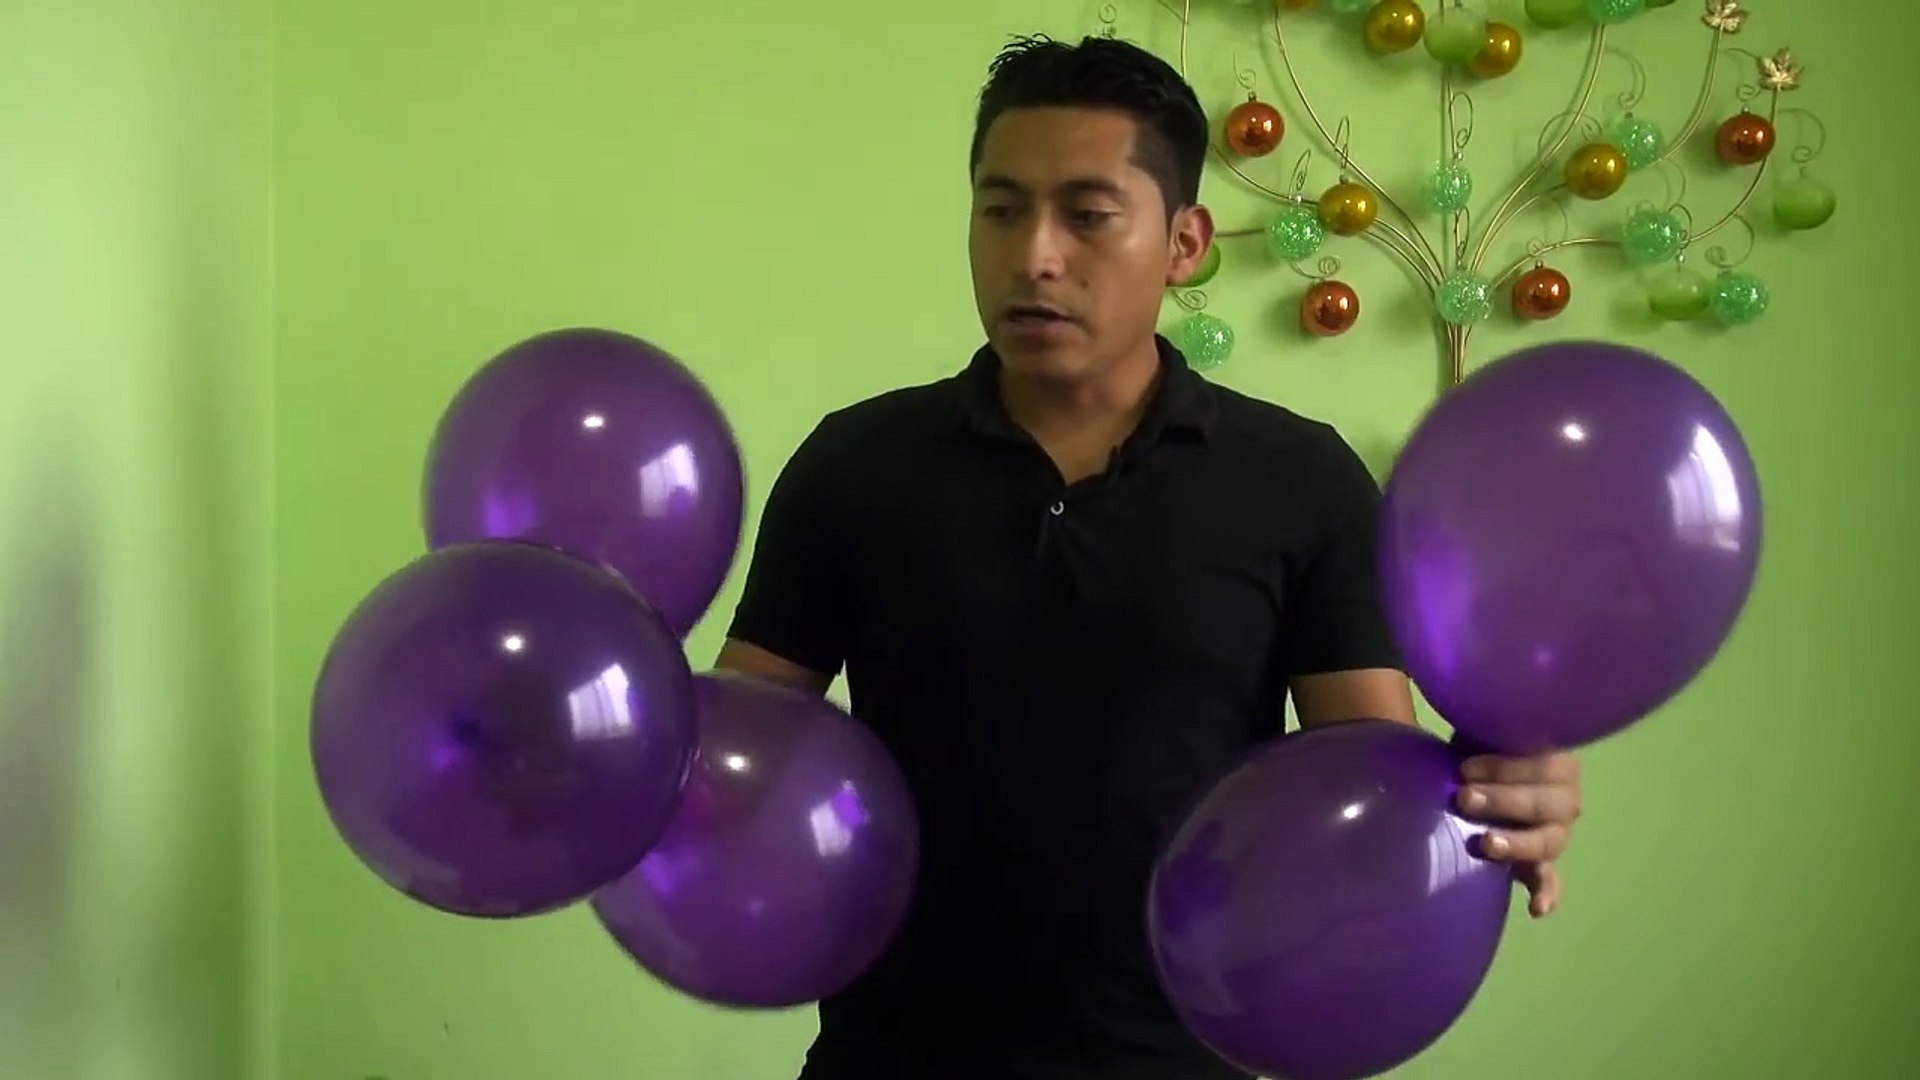 Racimo de uvas con globos comunión fácil y económico # 15 Видео